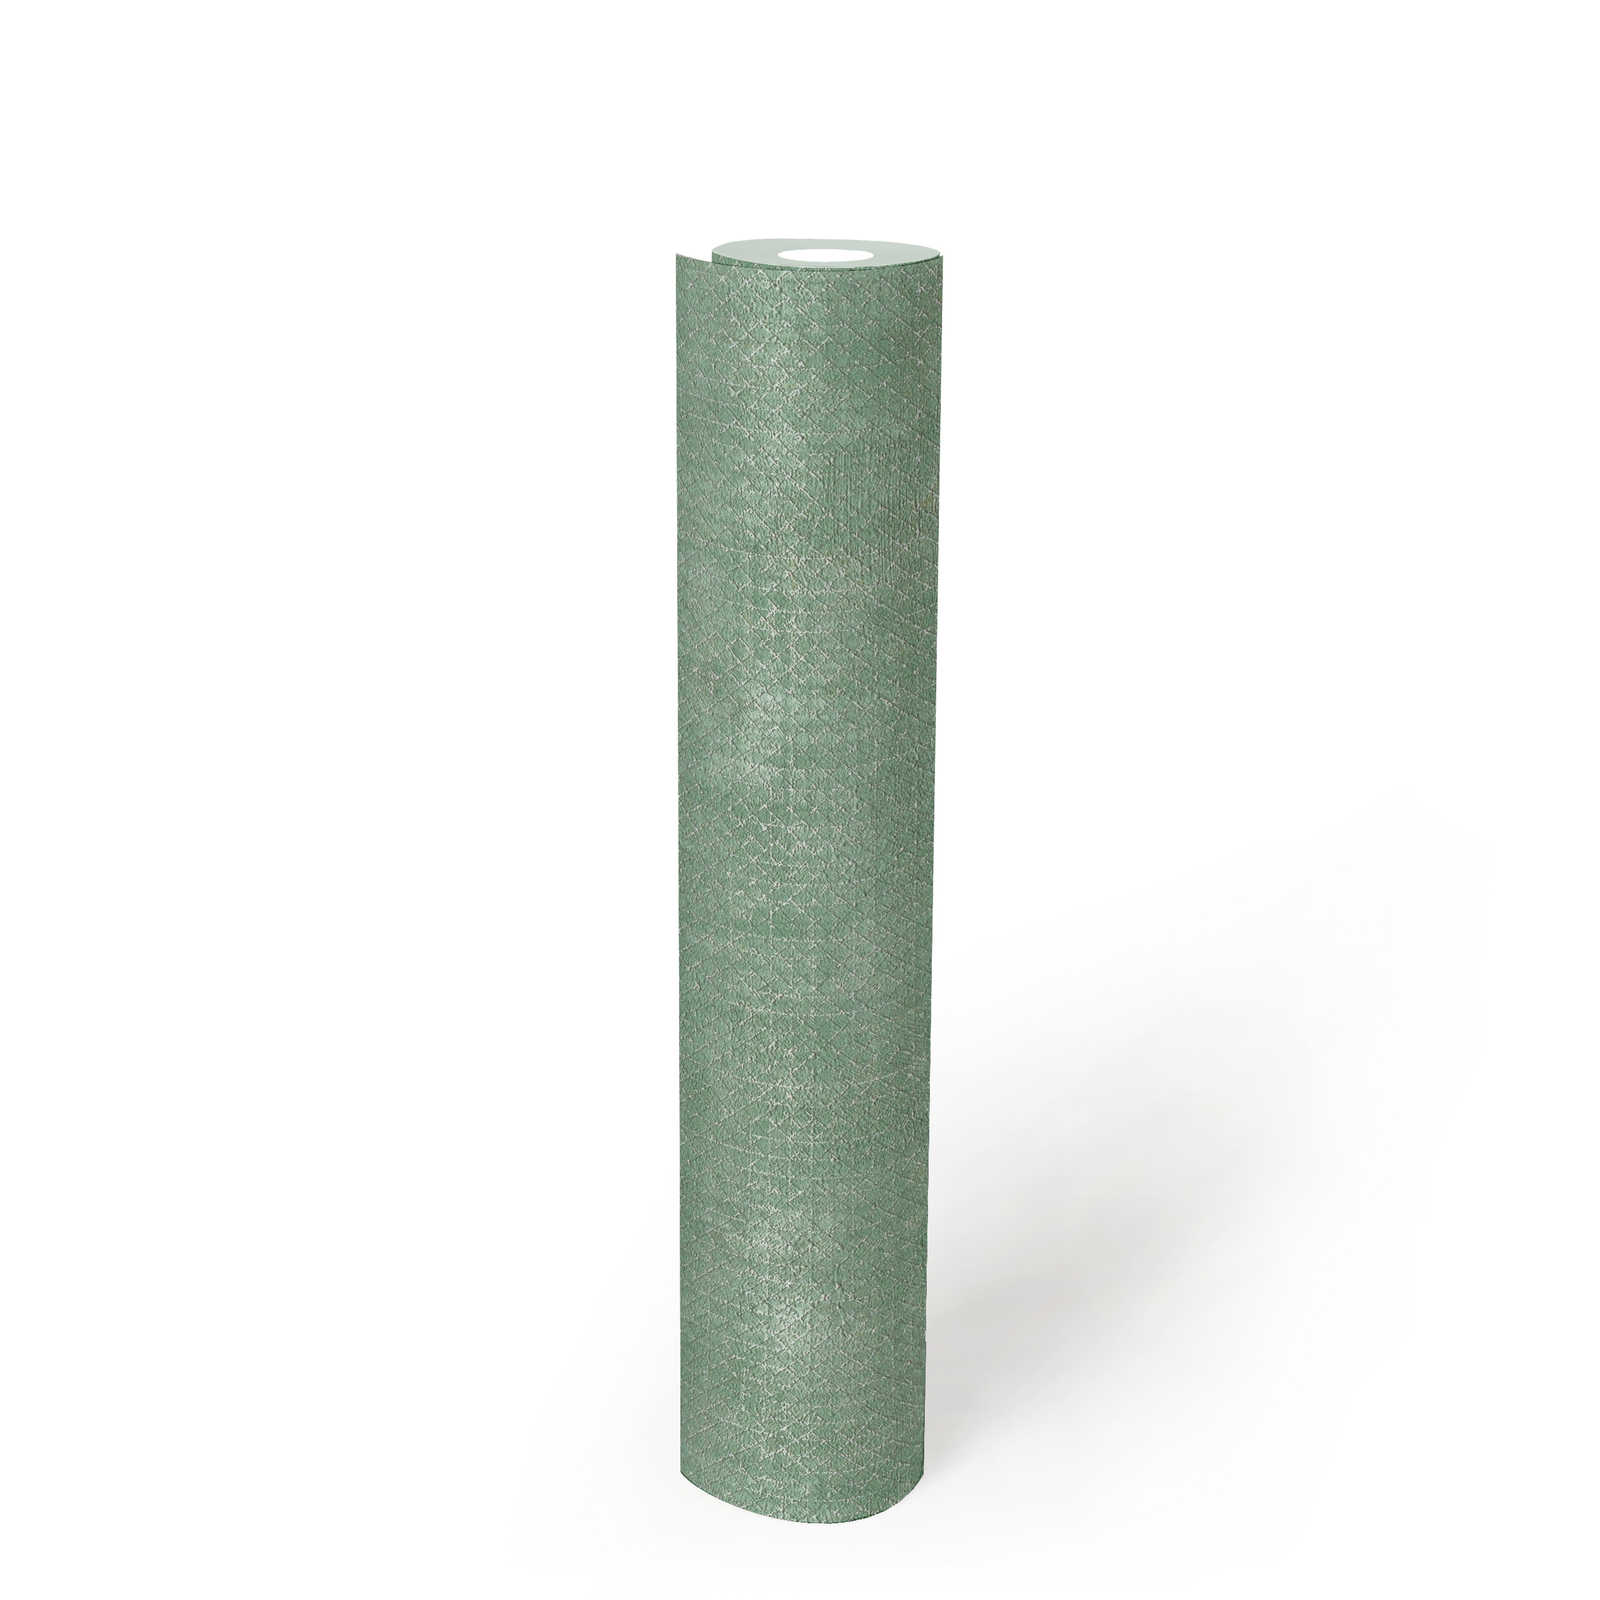             Papier peint vert menthe argenté motif structuré - métallique, vert
        